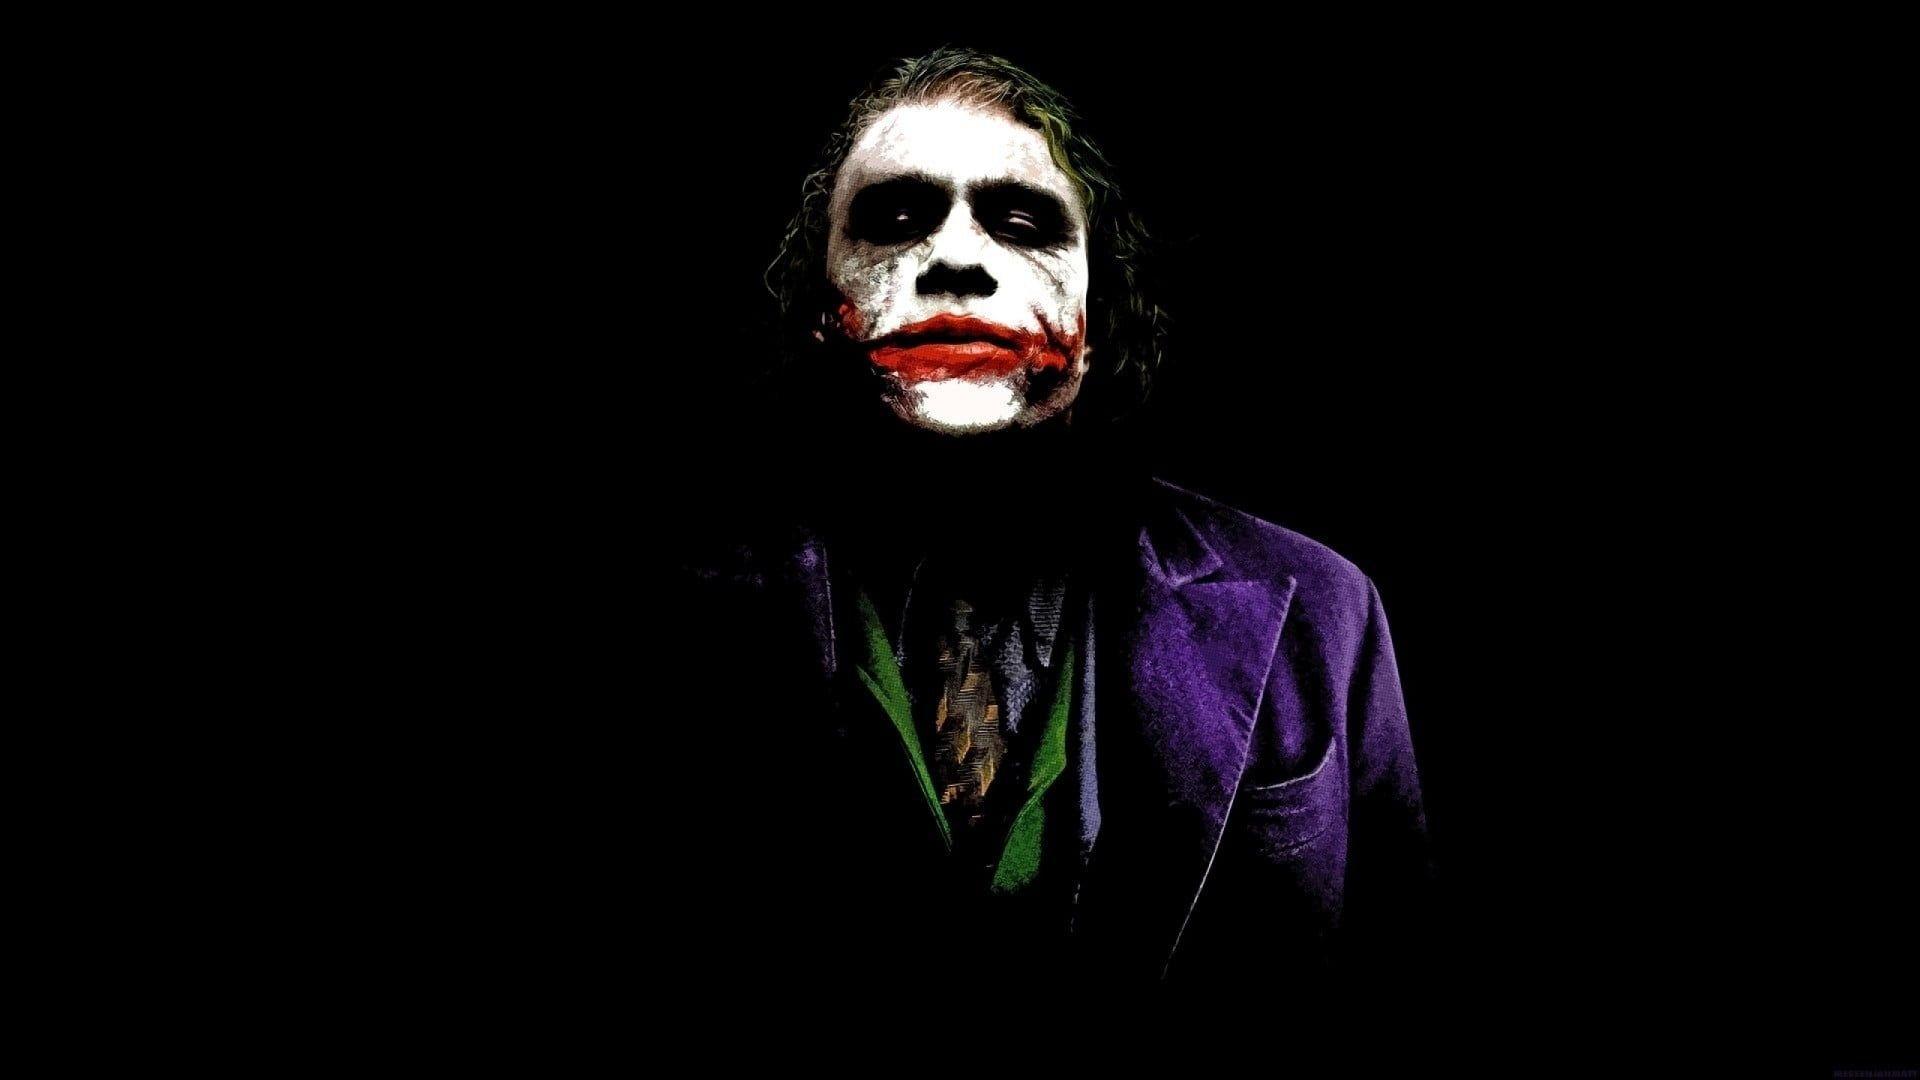 700+] Joker Wallpapers | Wallpapers.com